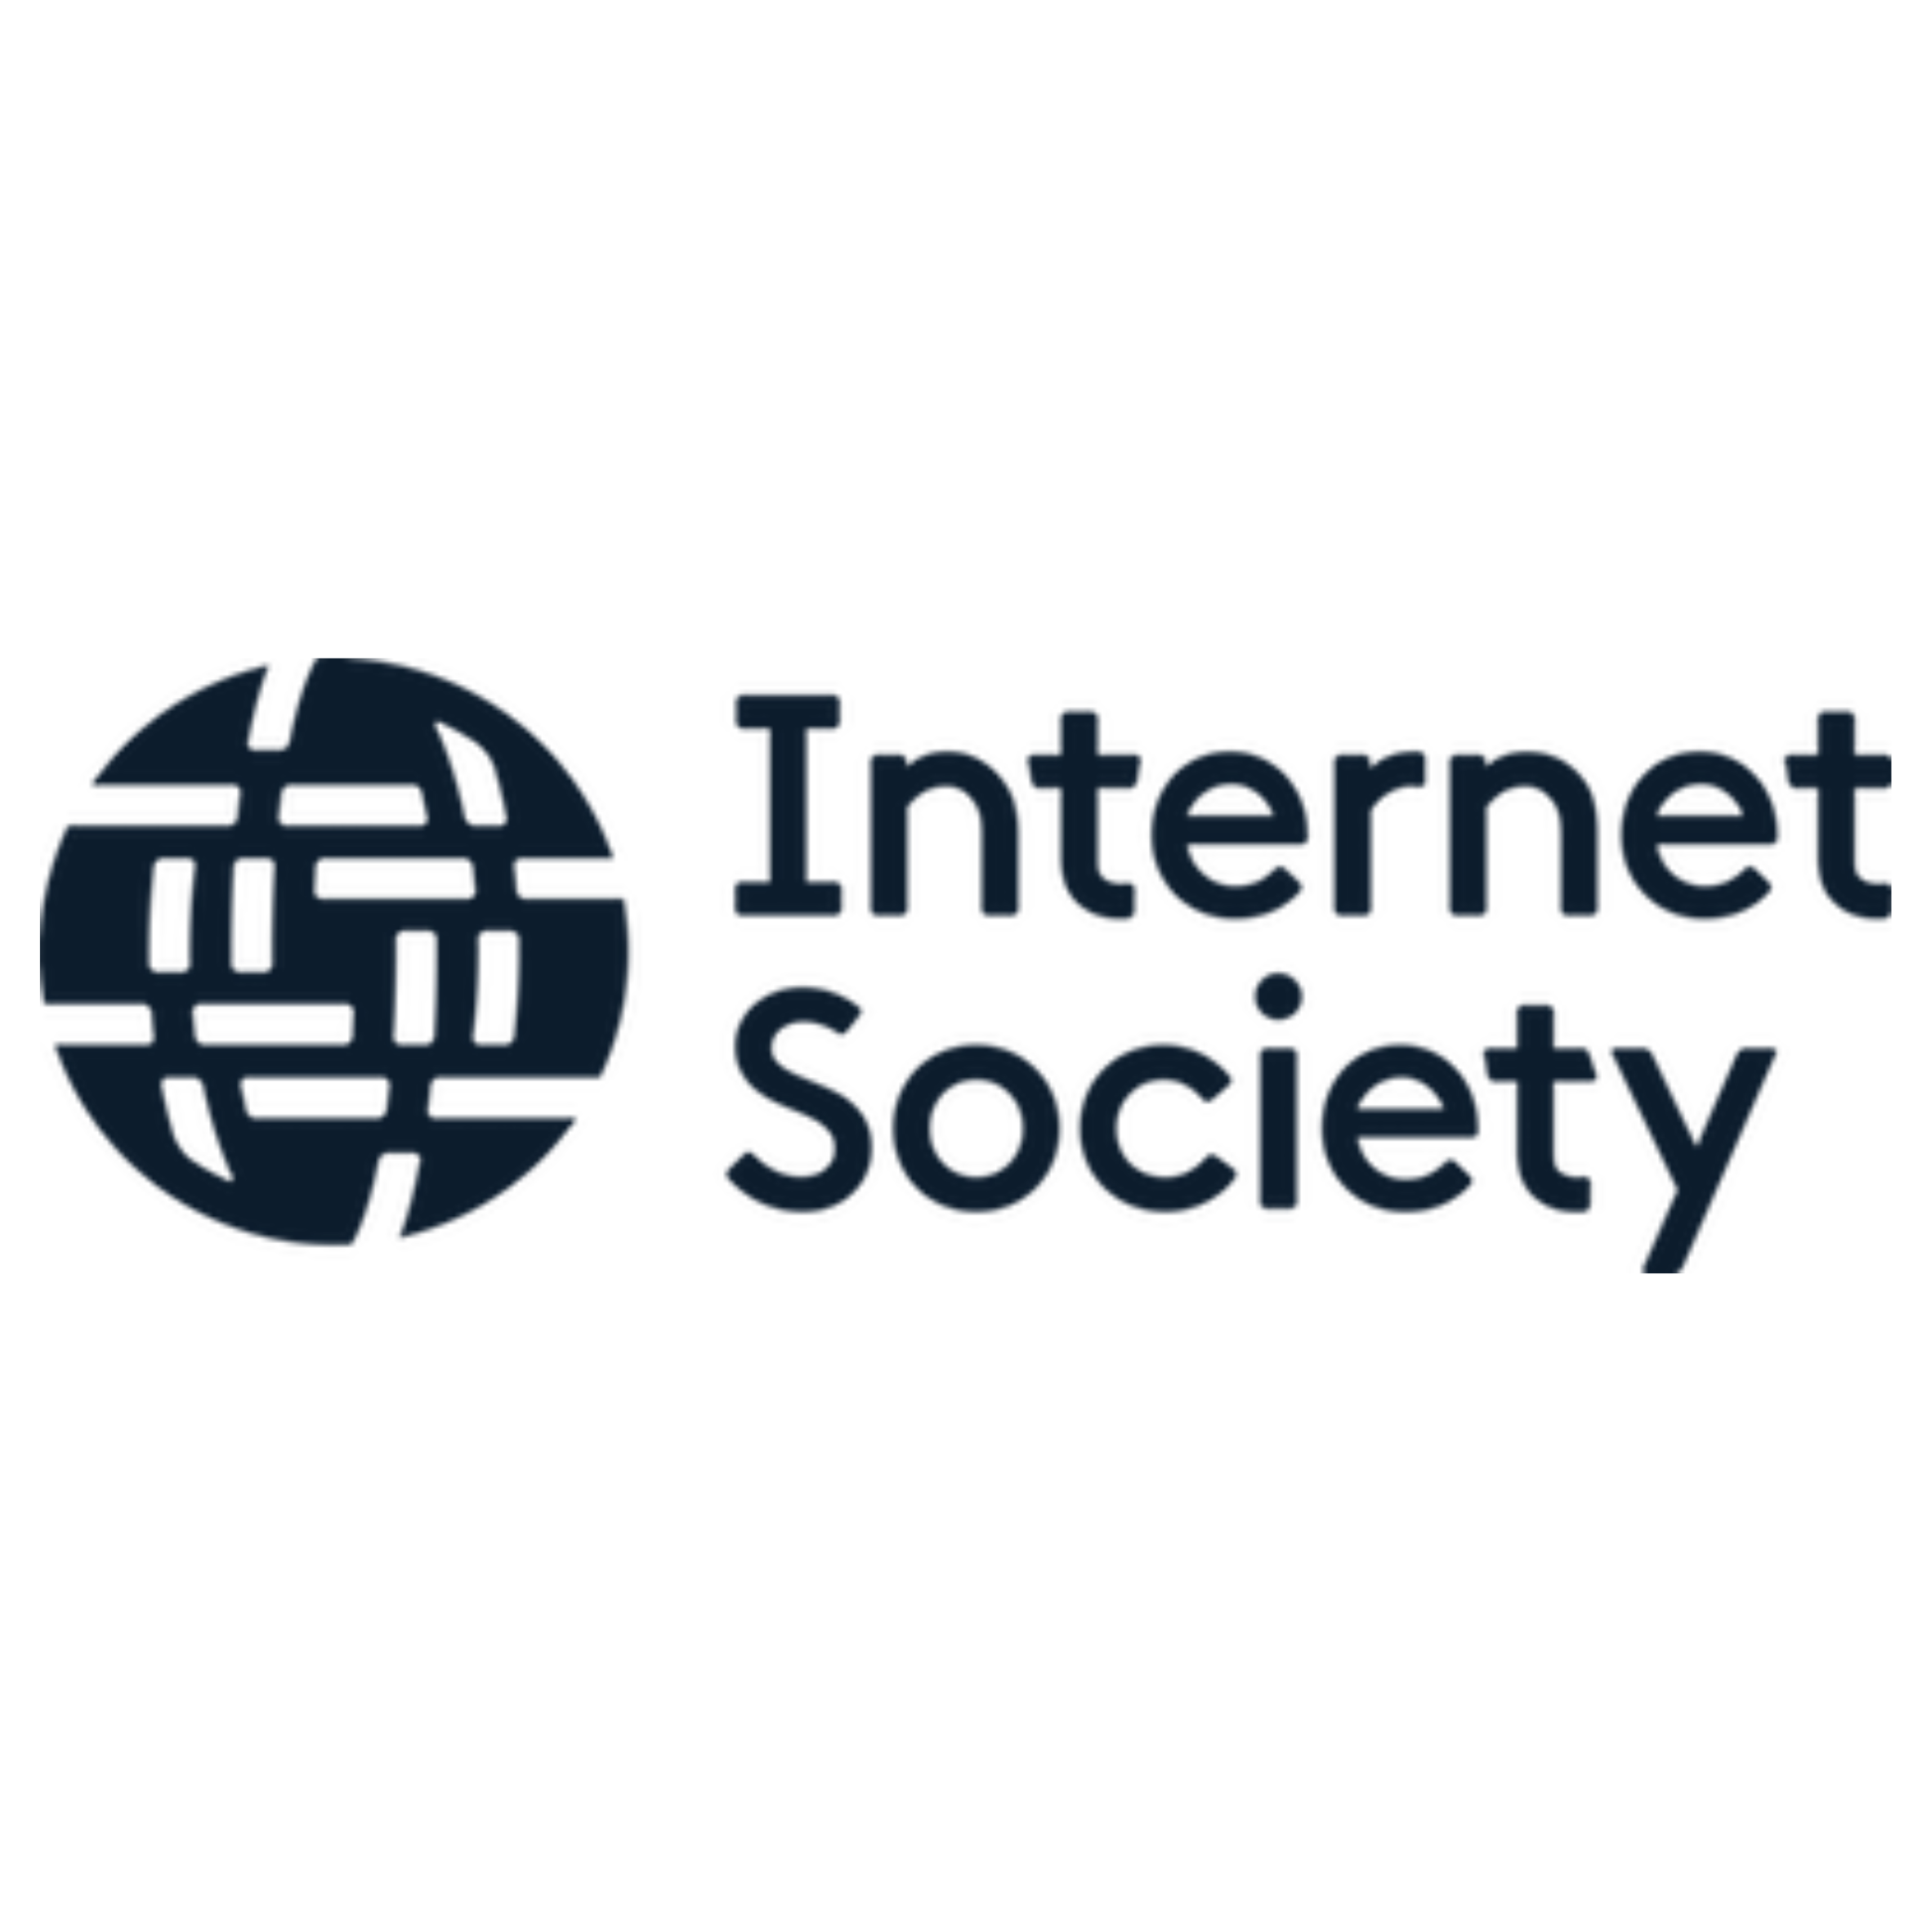 Internet Society's logo